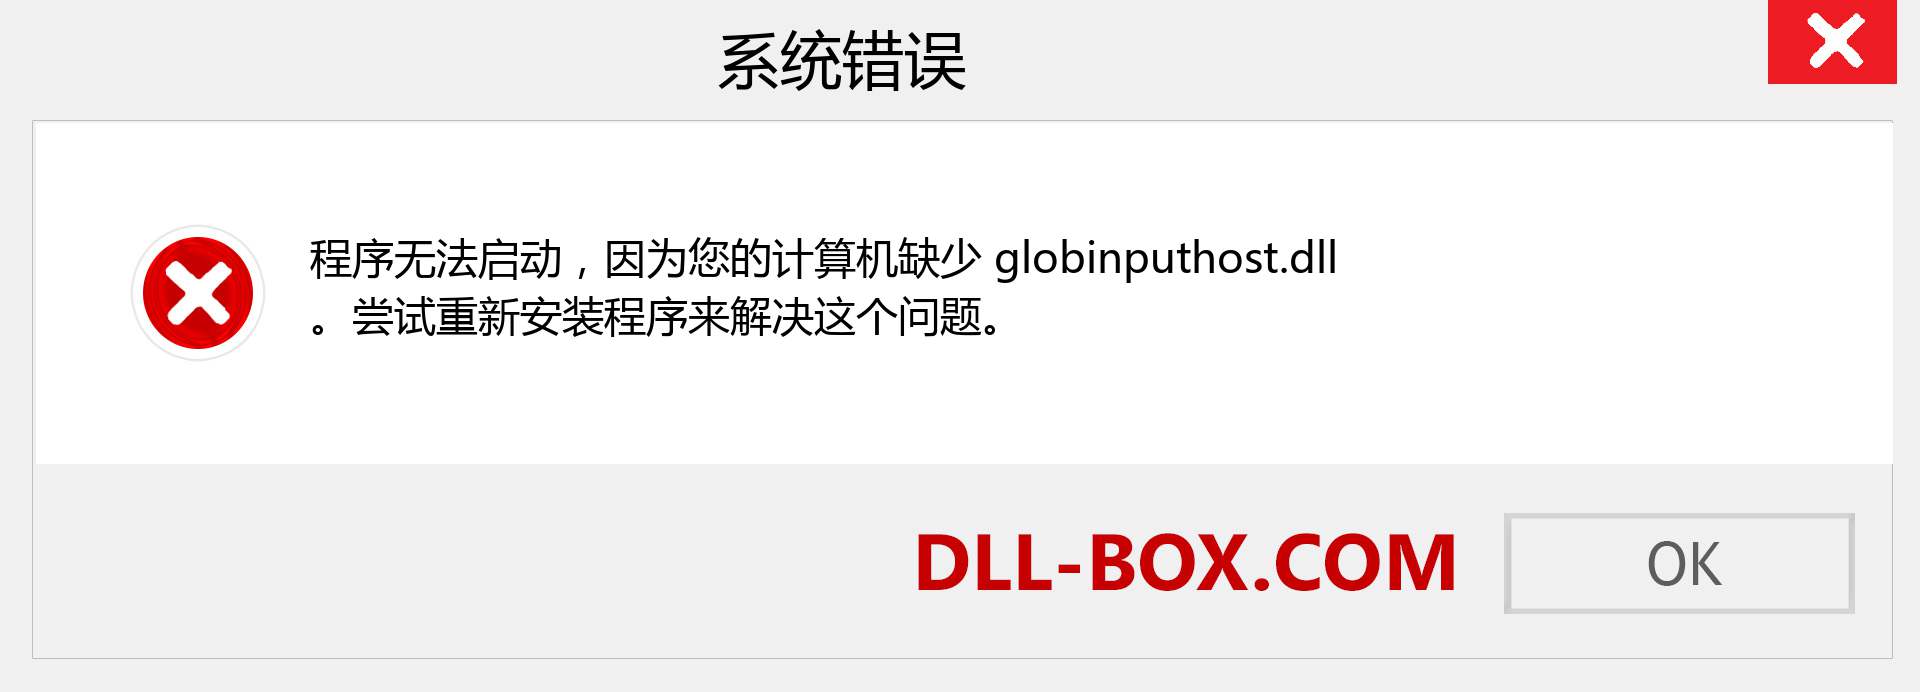 globinputhost.dll 文件丢失？。 适用于 Windows 7、8、10 的下载 - 修复 Windows、照片、图像上的 globinputhost dll 丢失错误